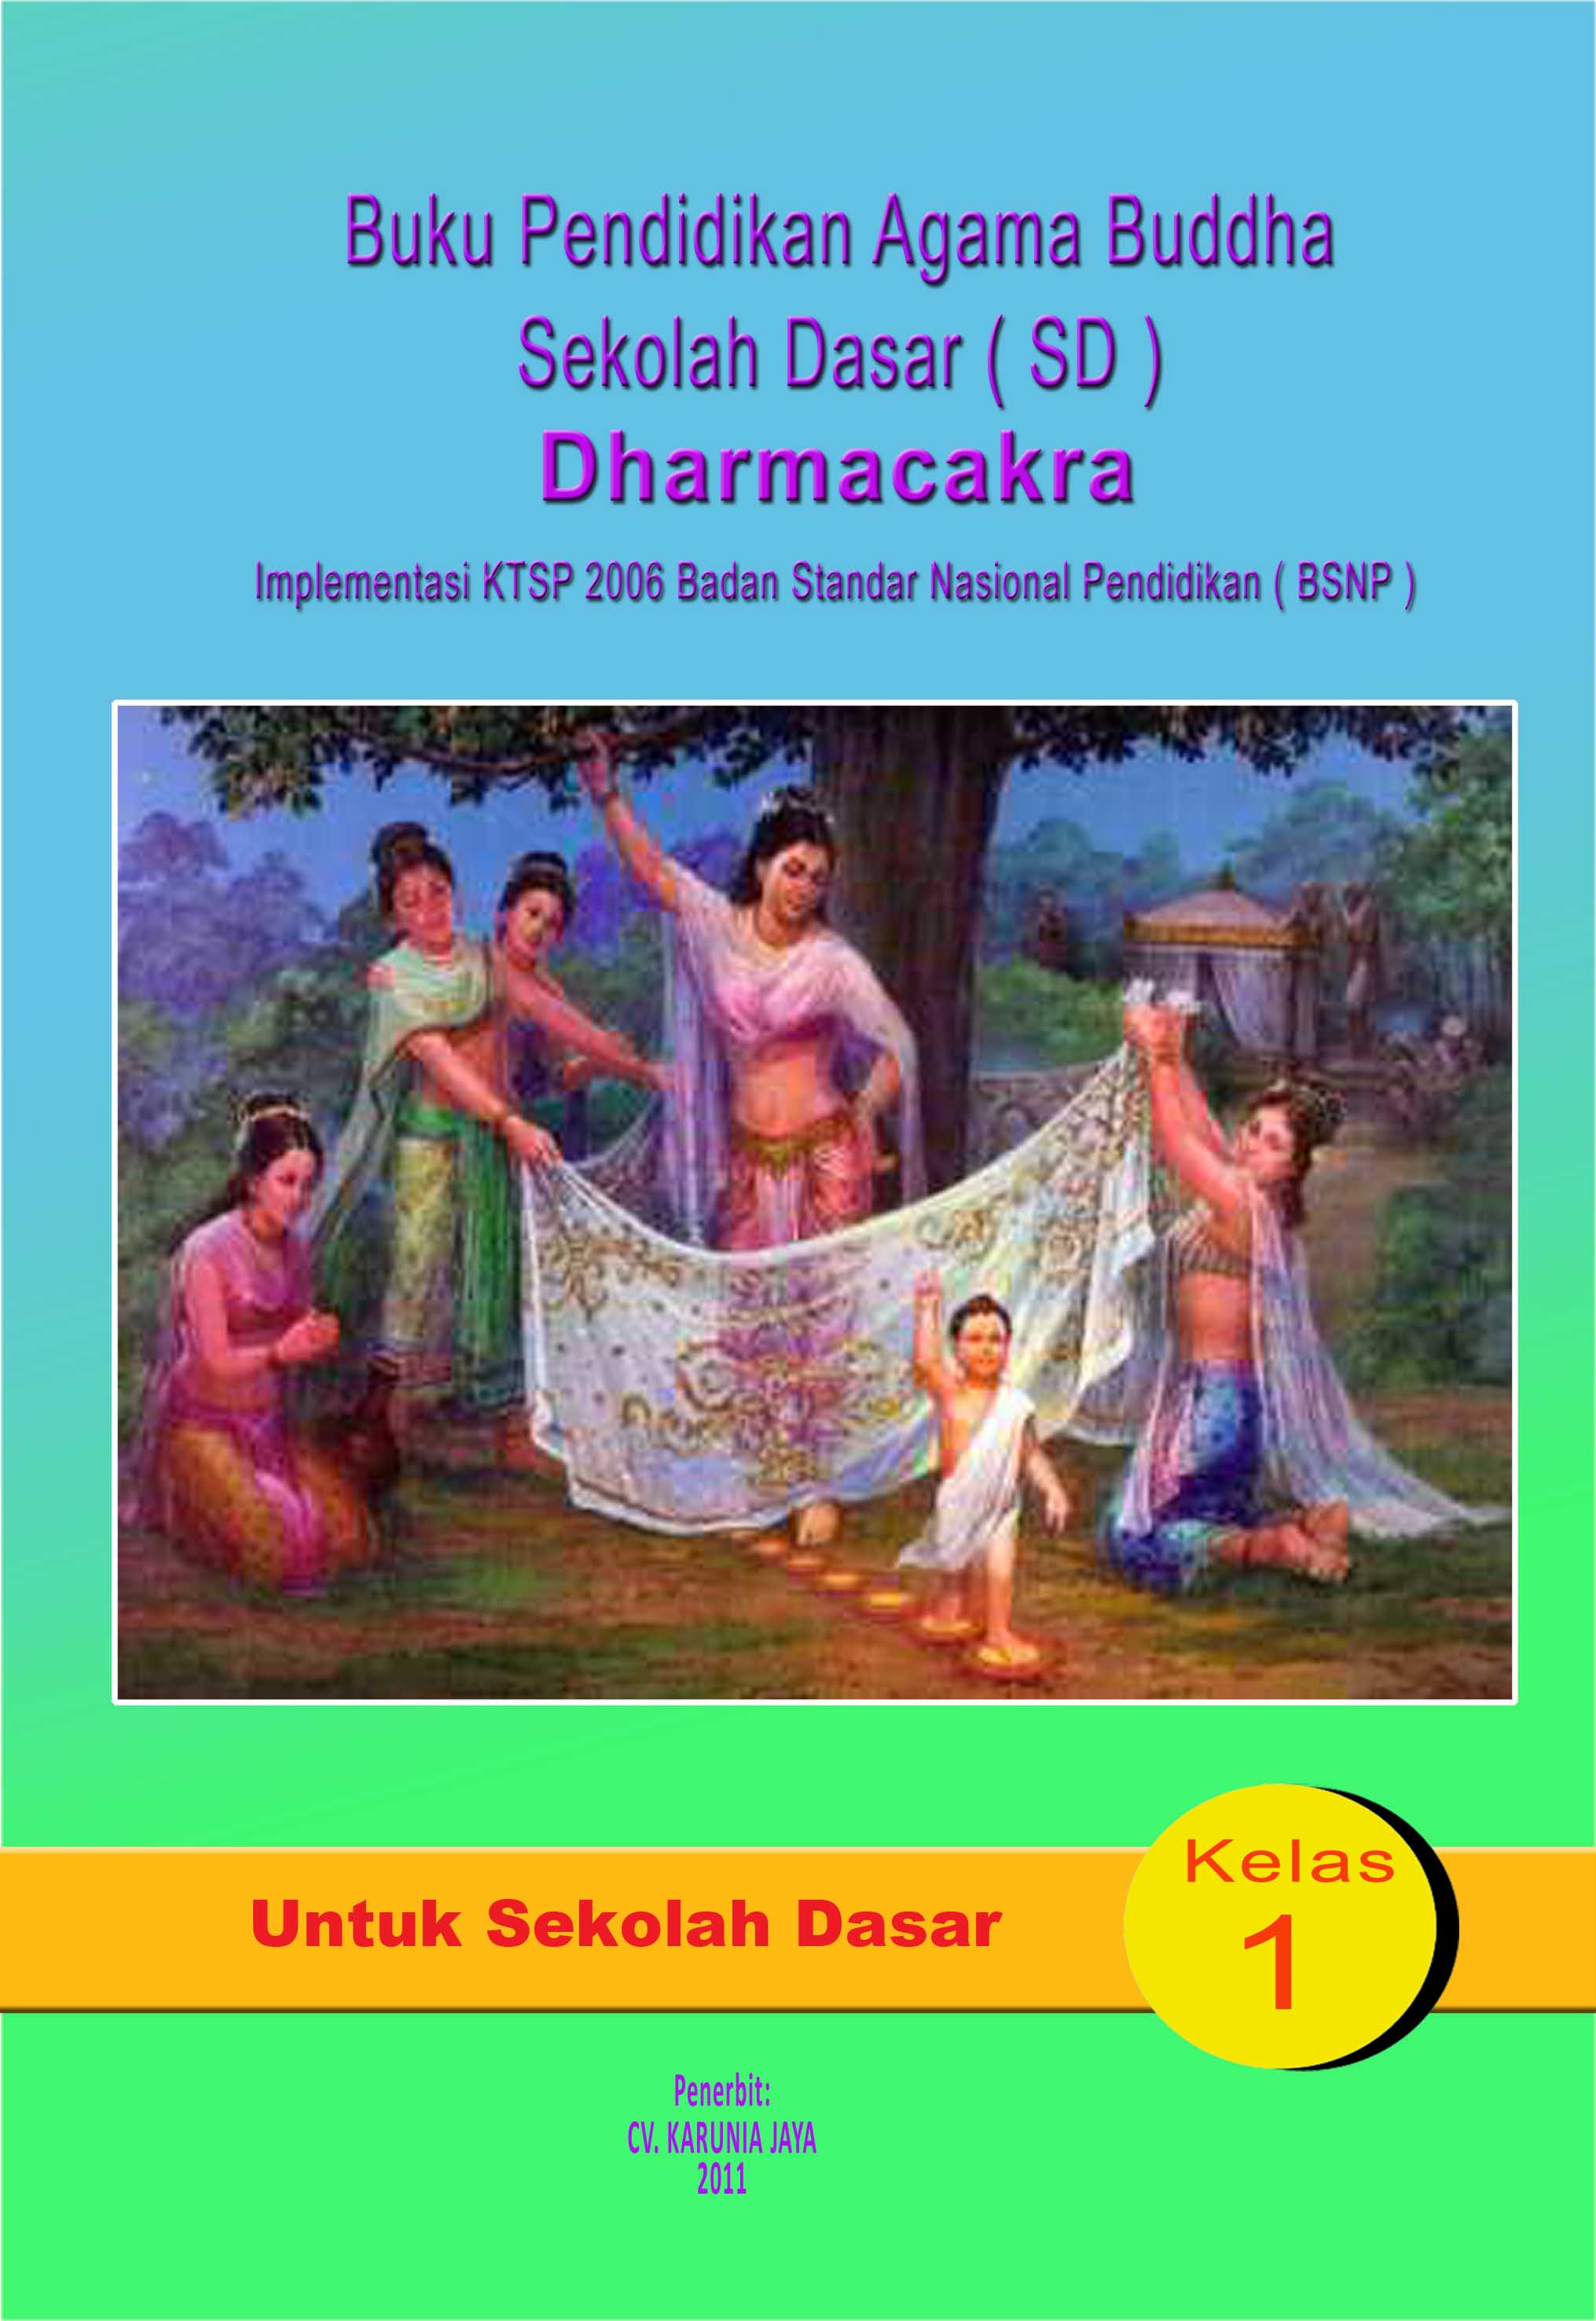 Buku Pendidikan Agama Buddha Sekolah Dasar Dharmacakra Kelas 1